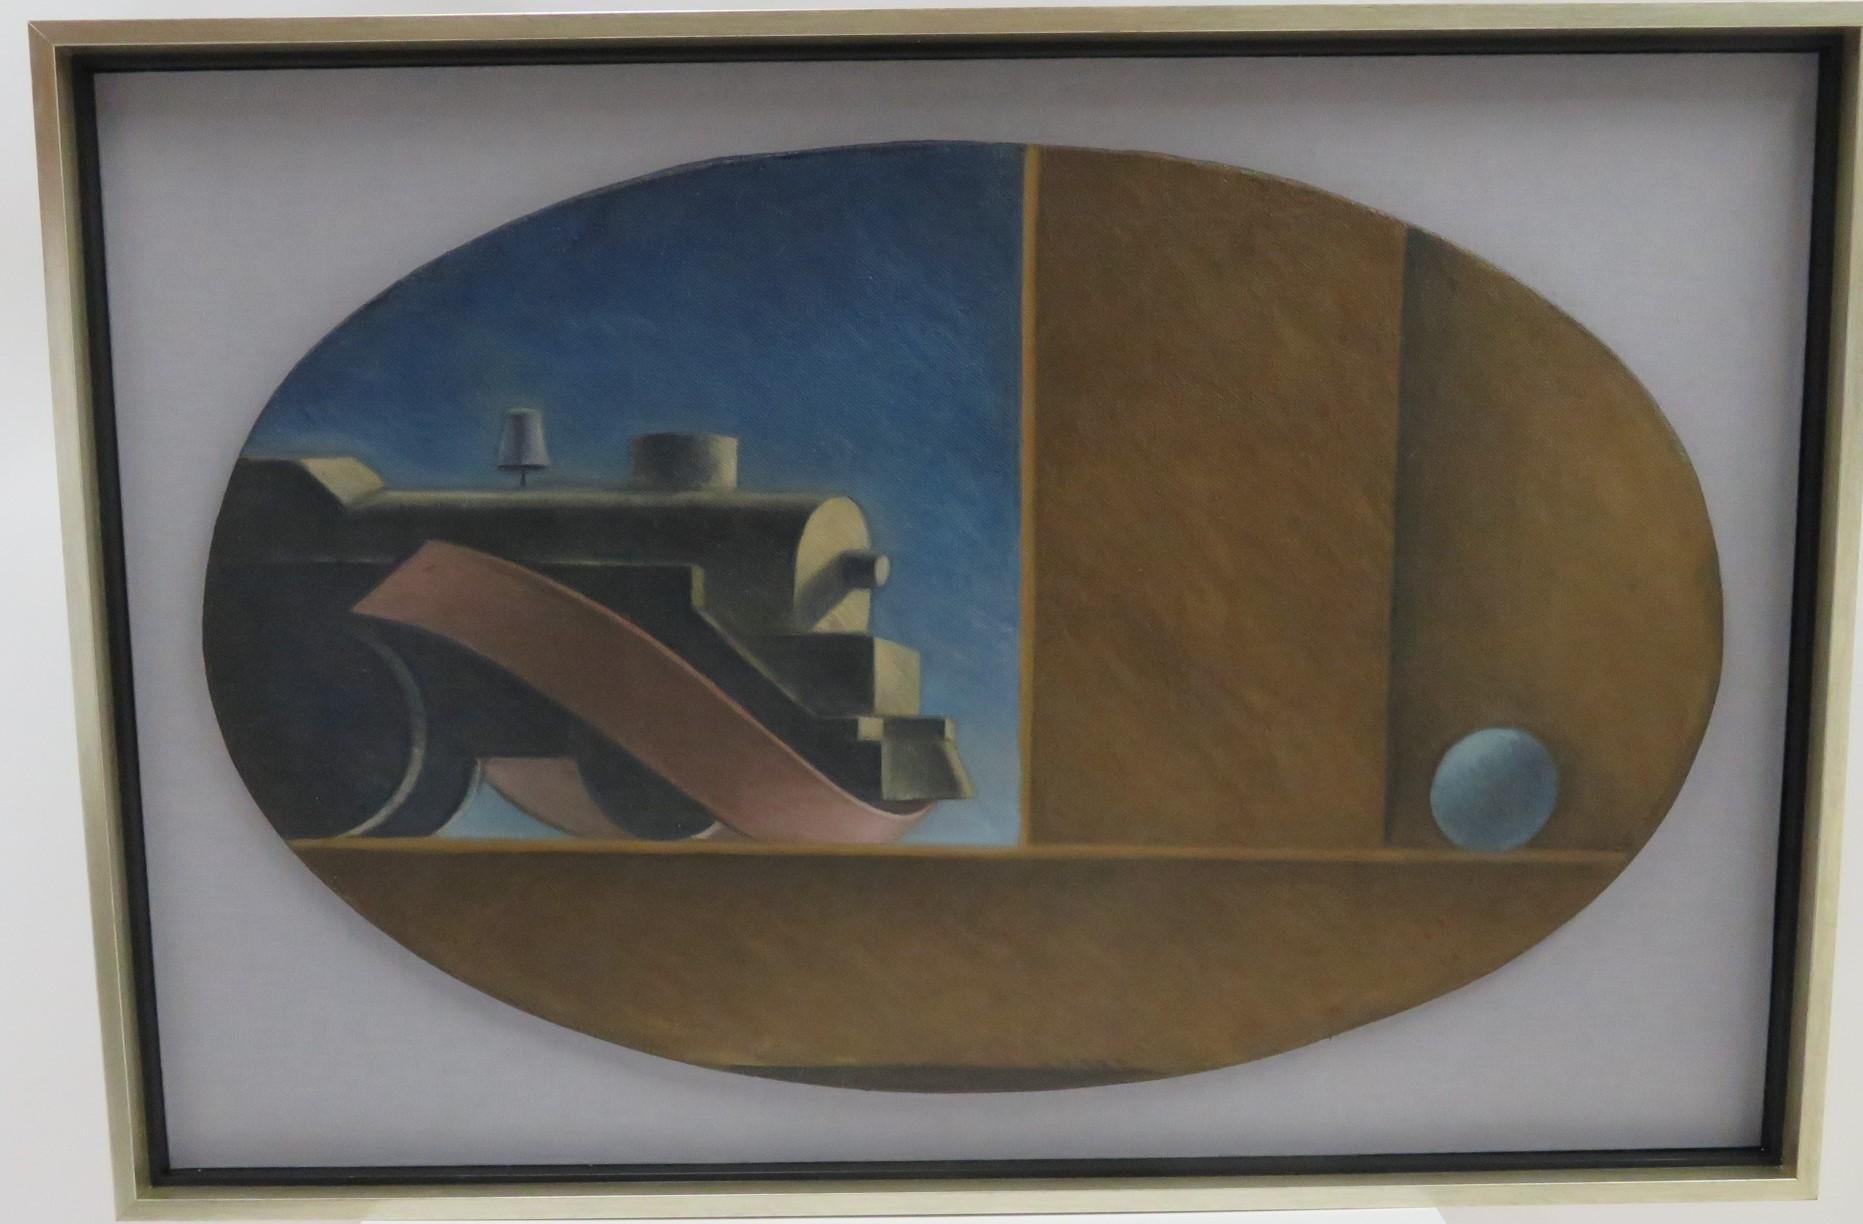 Trois belles peintures ovales à l'huile sur toile de l'ère WPA des années 1930/1940 représentant des trains avec un ruban et une balle flottante.  Inspirées par Thomas Hart Benton, ces trois œuvres ne sont pas signées et ont été montées flottantes